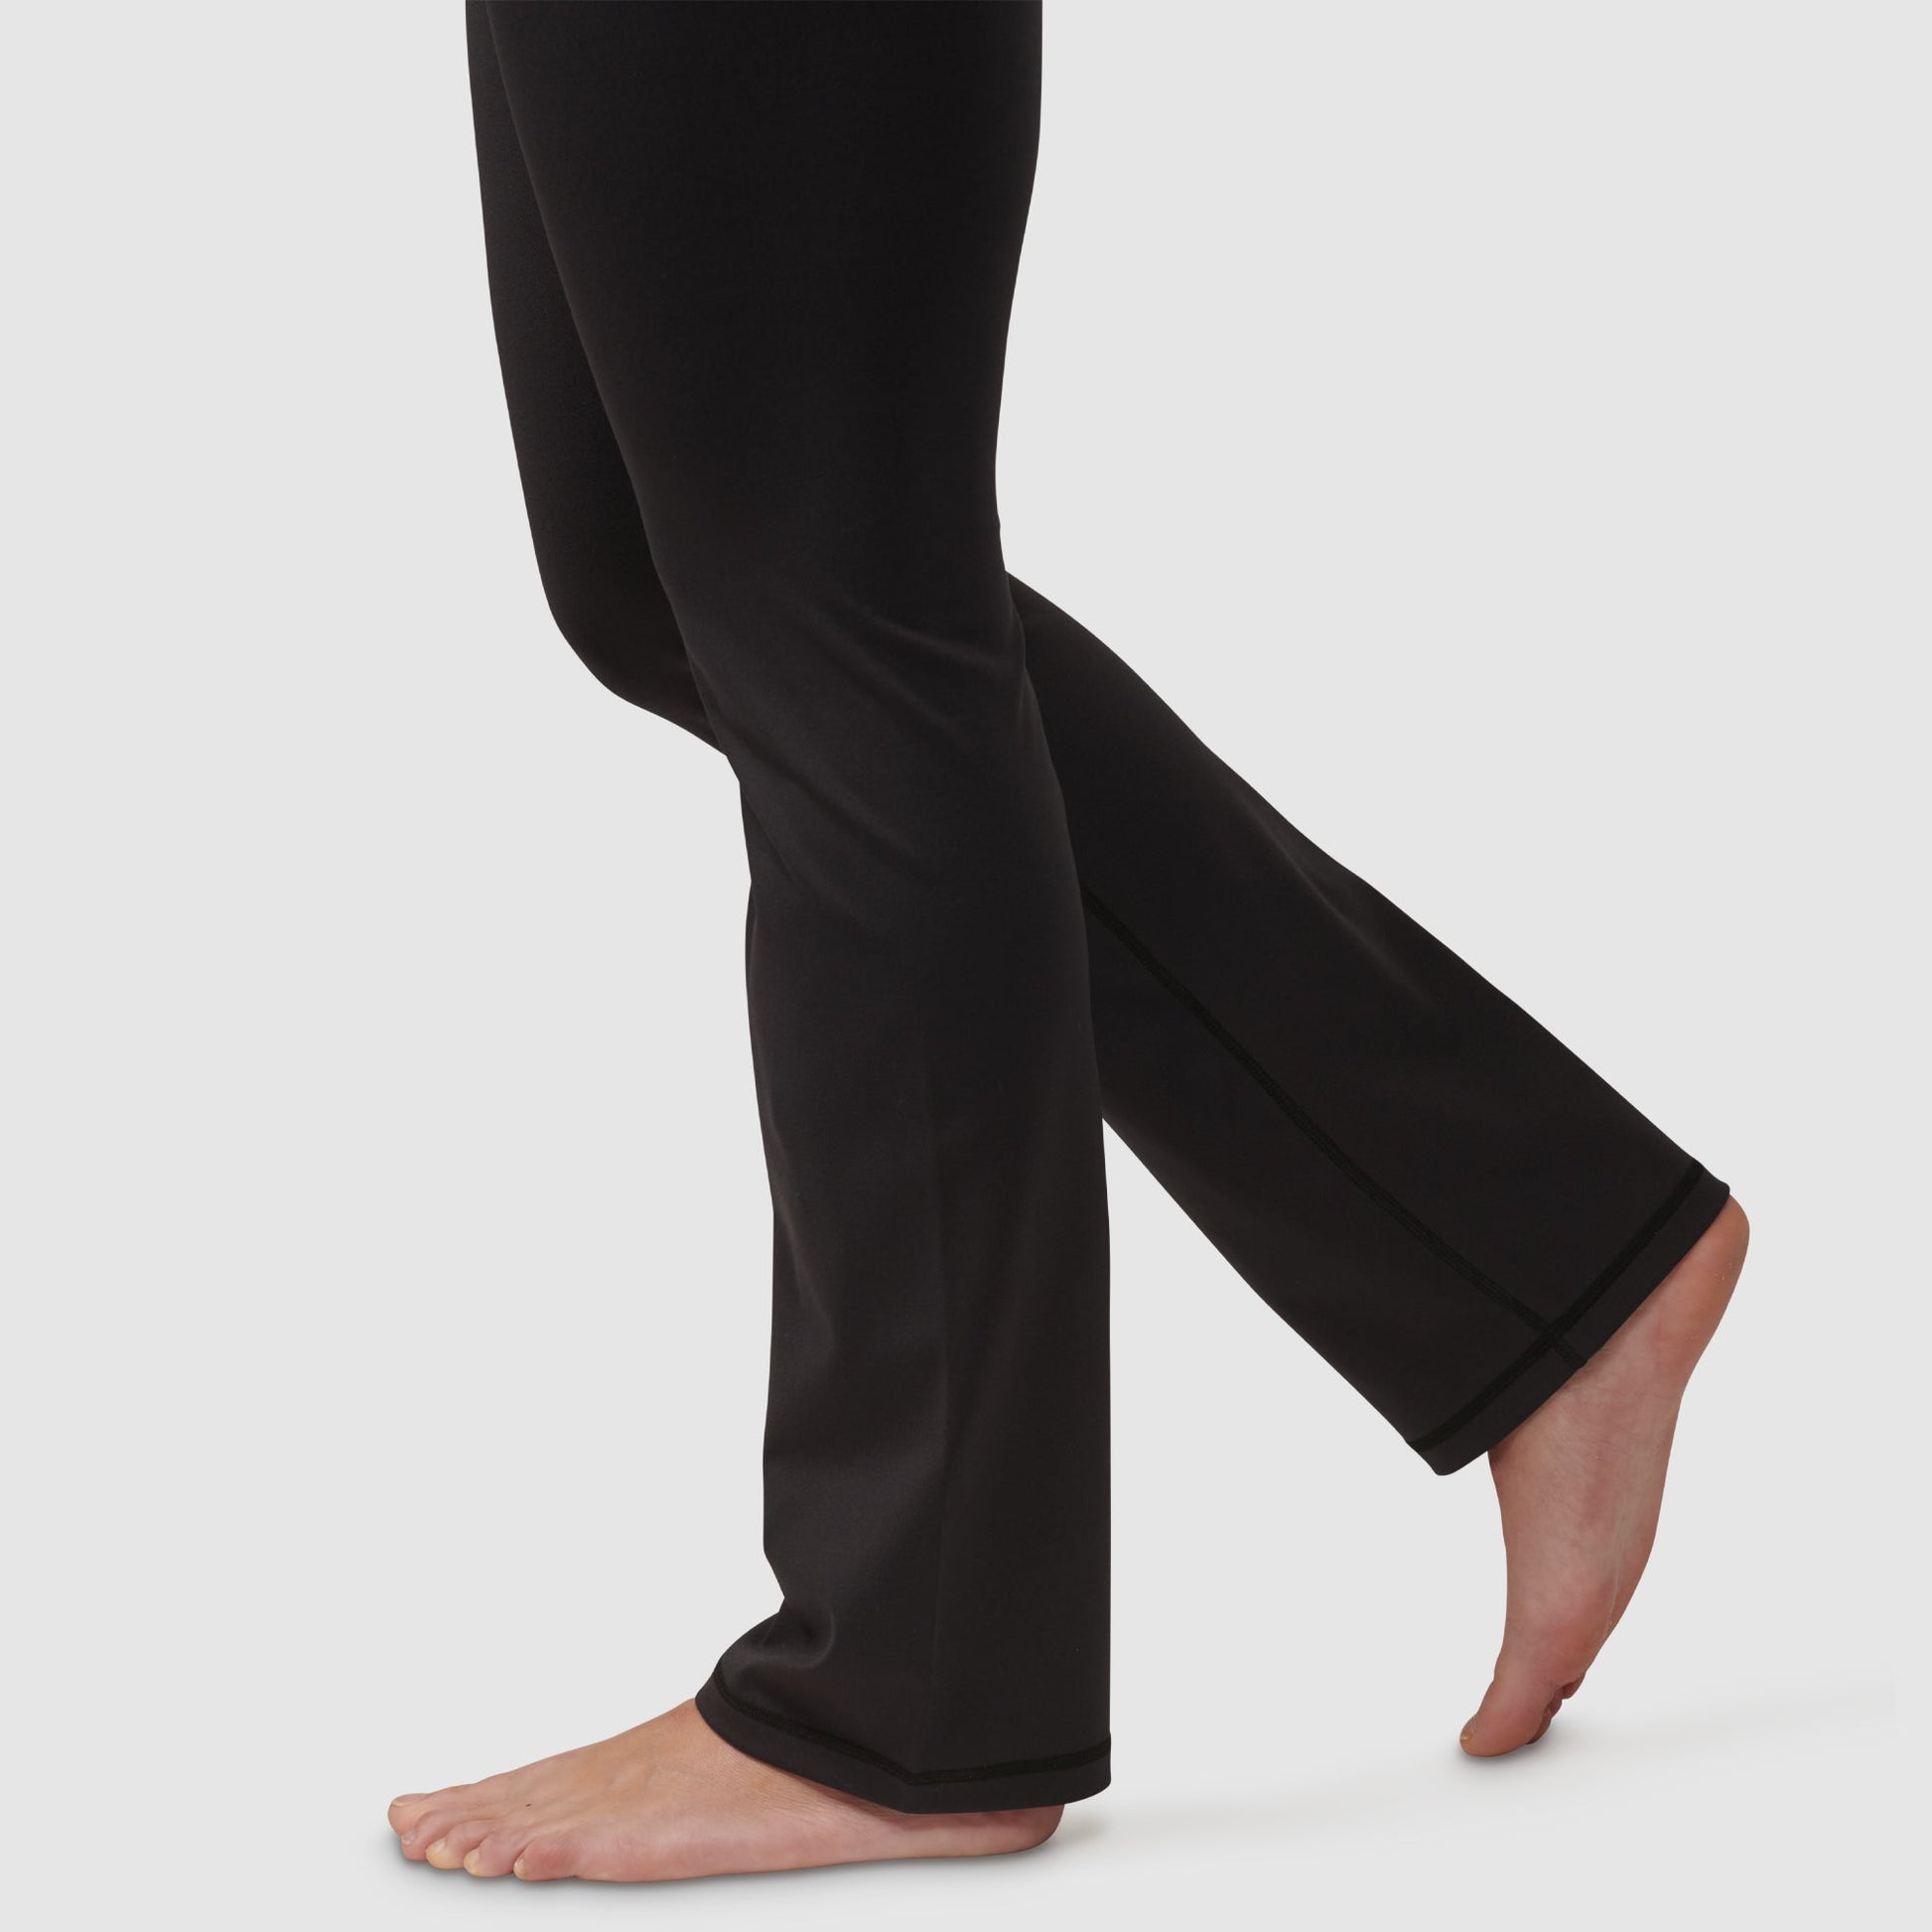 High-waisted yoga pants